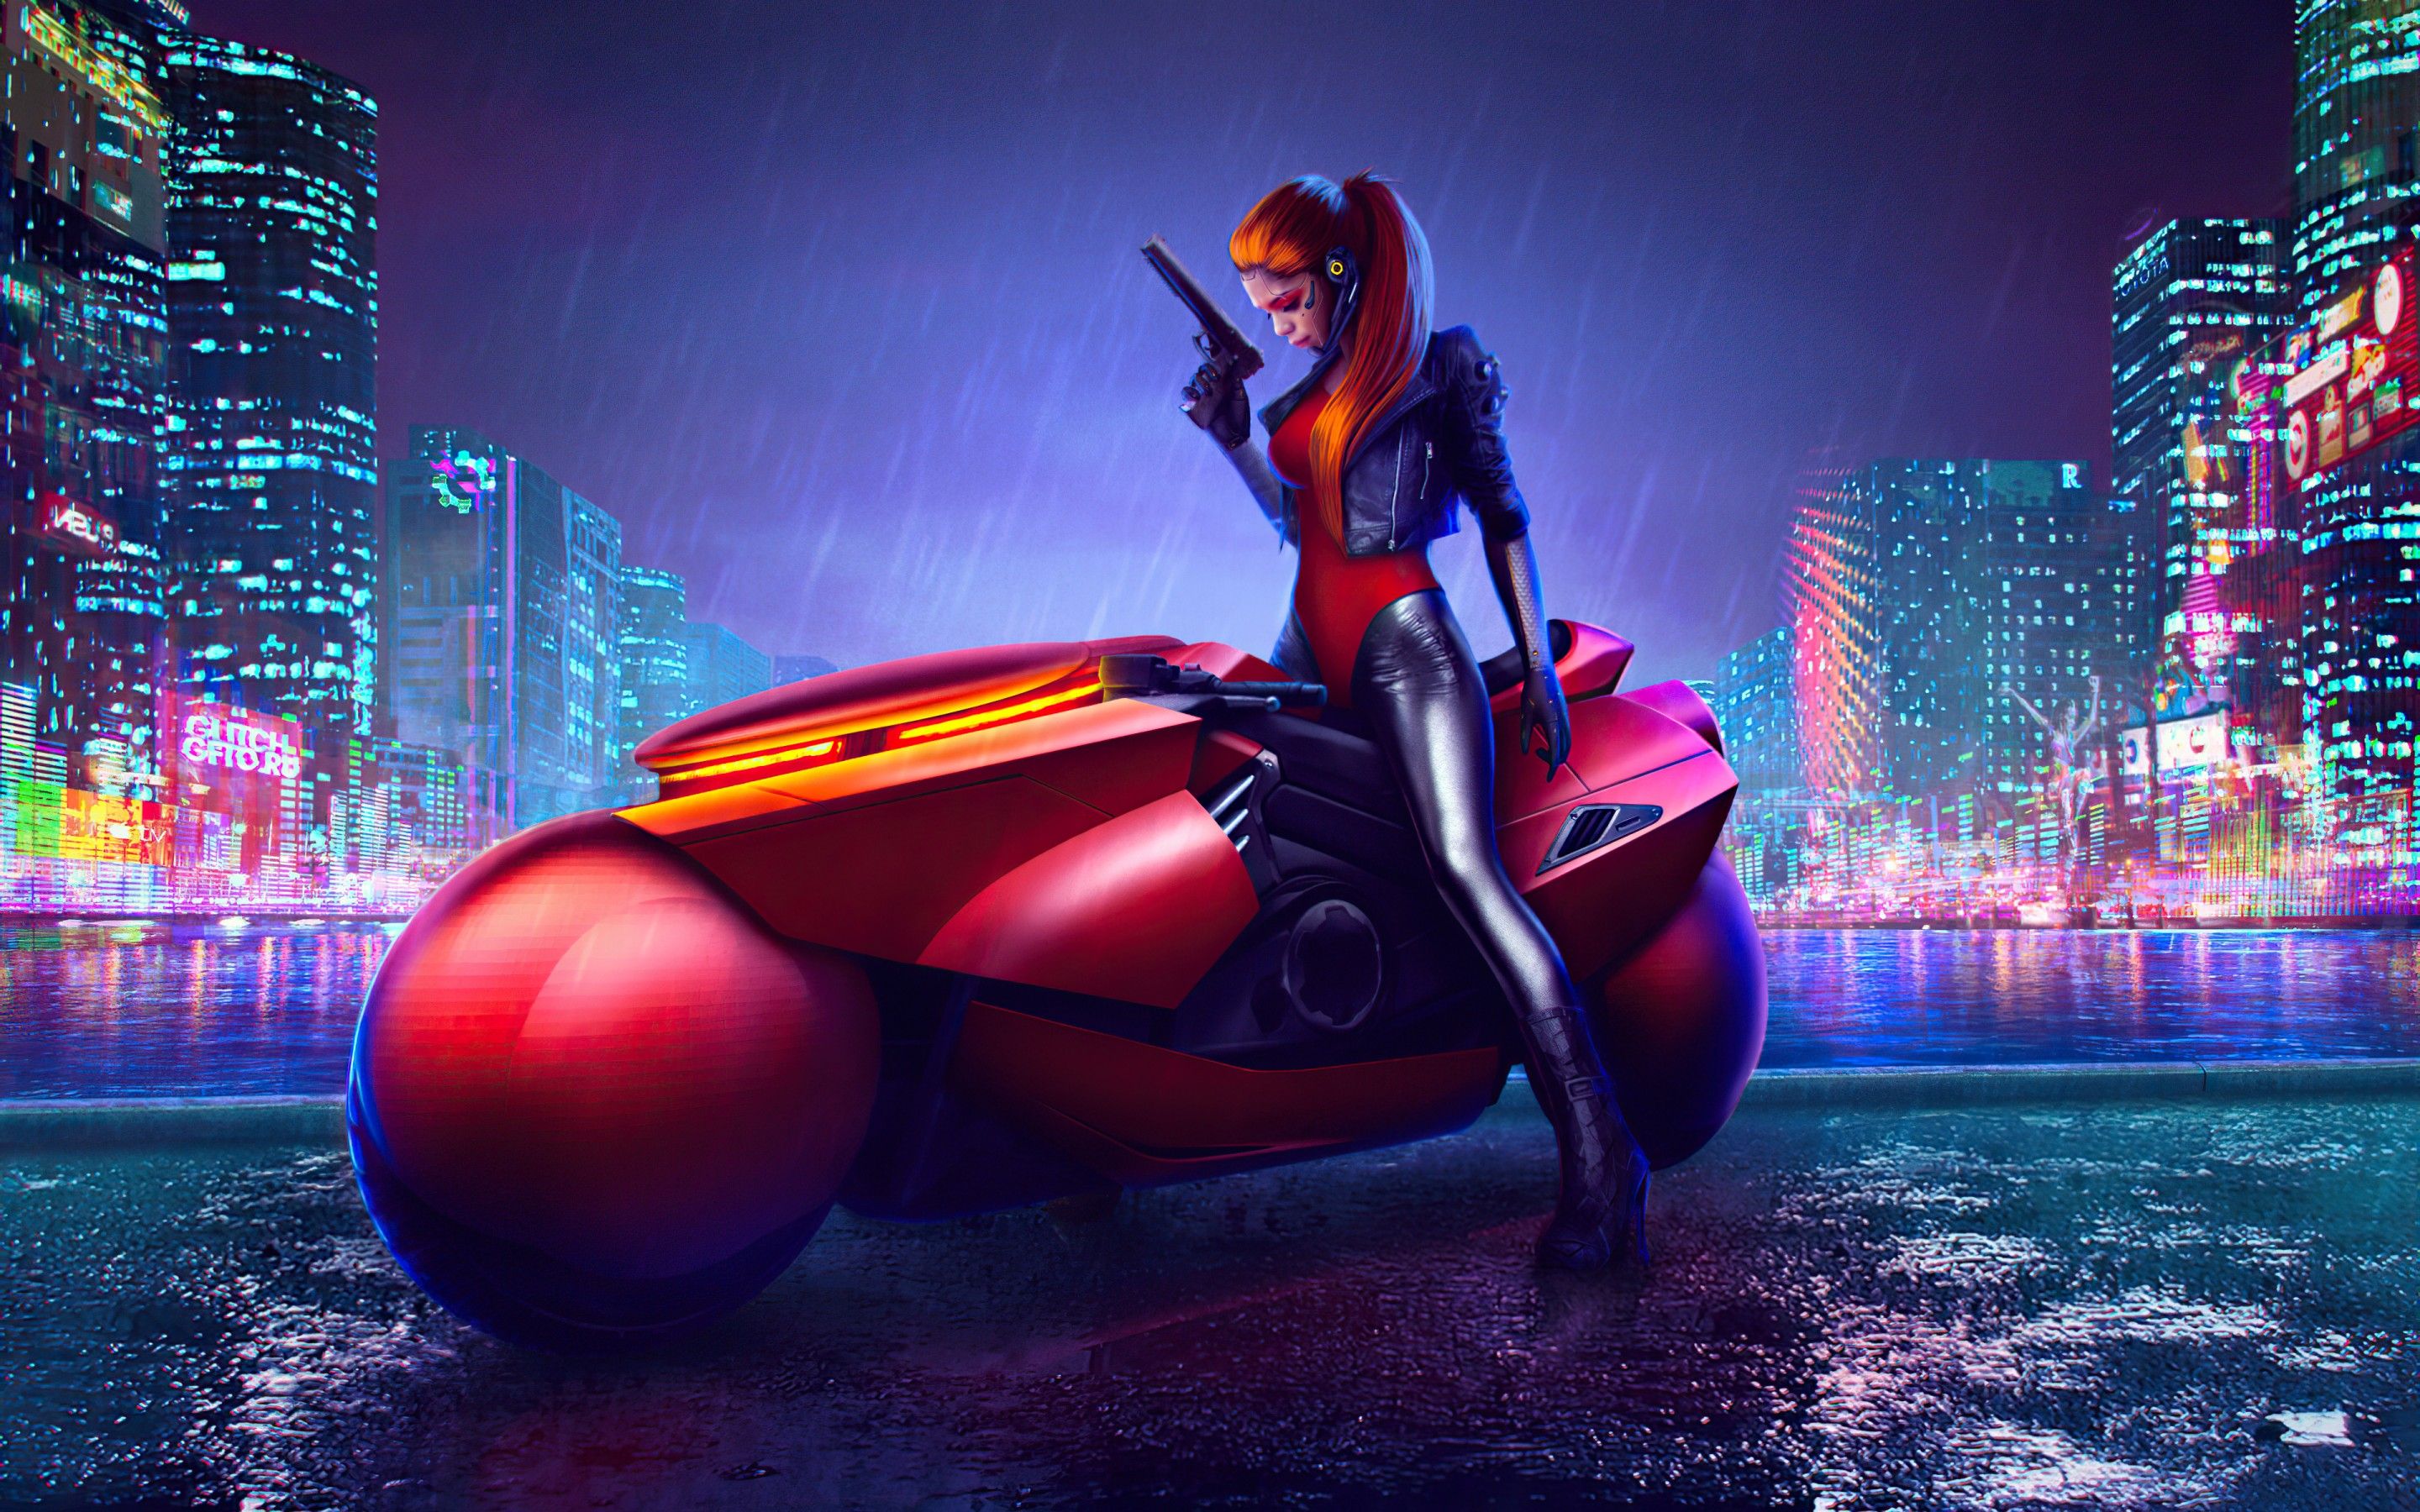 Cyberpunk girl Wallpaper 4K, Cyberpunk bike, Digital art, Graphics CGI